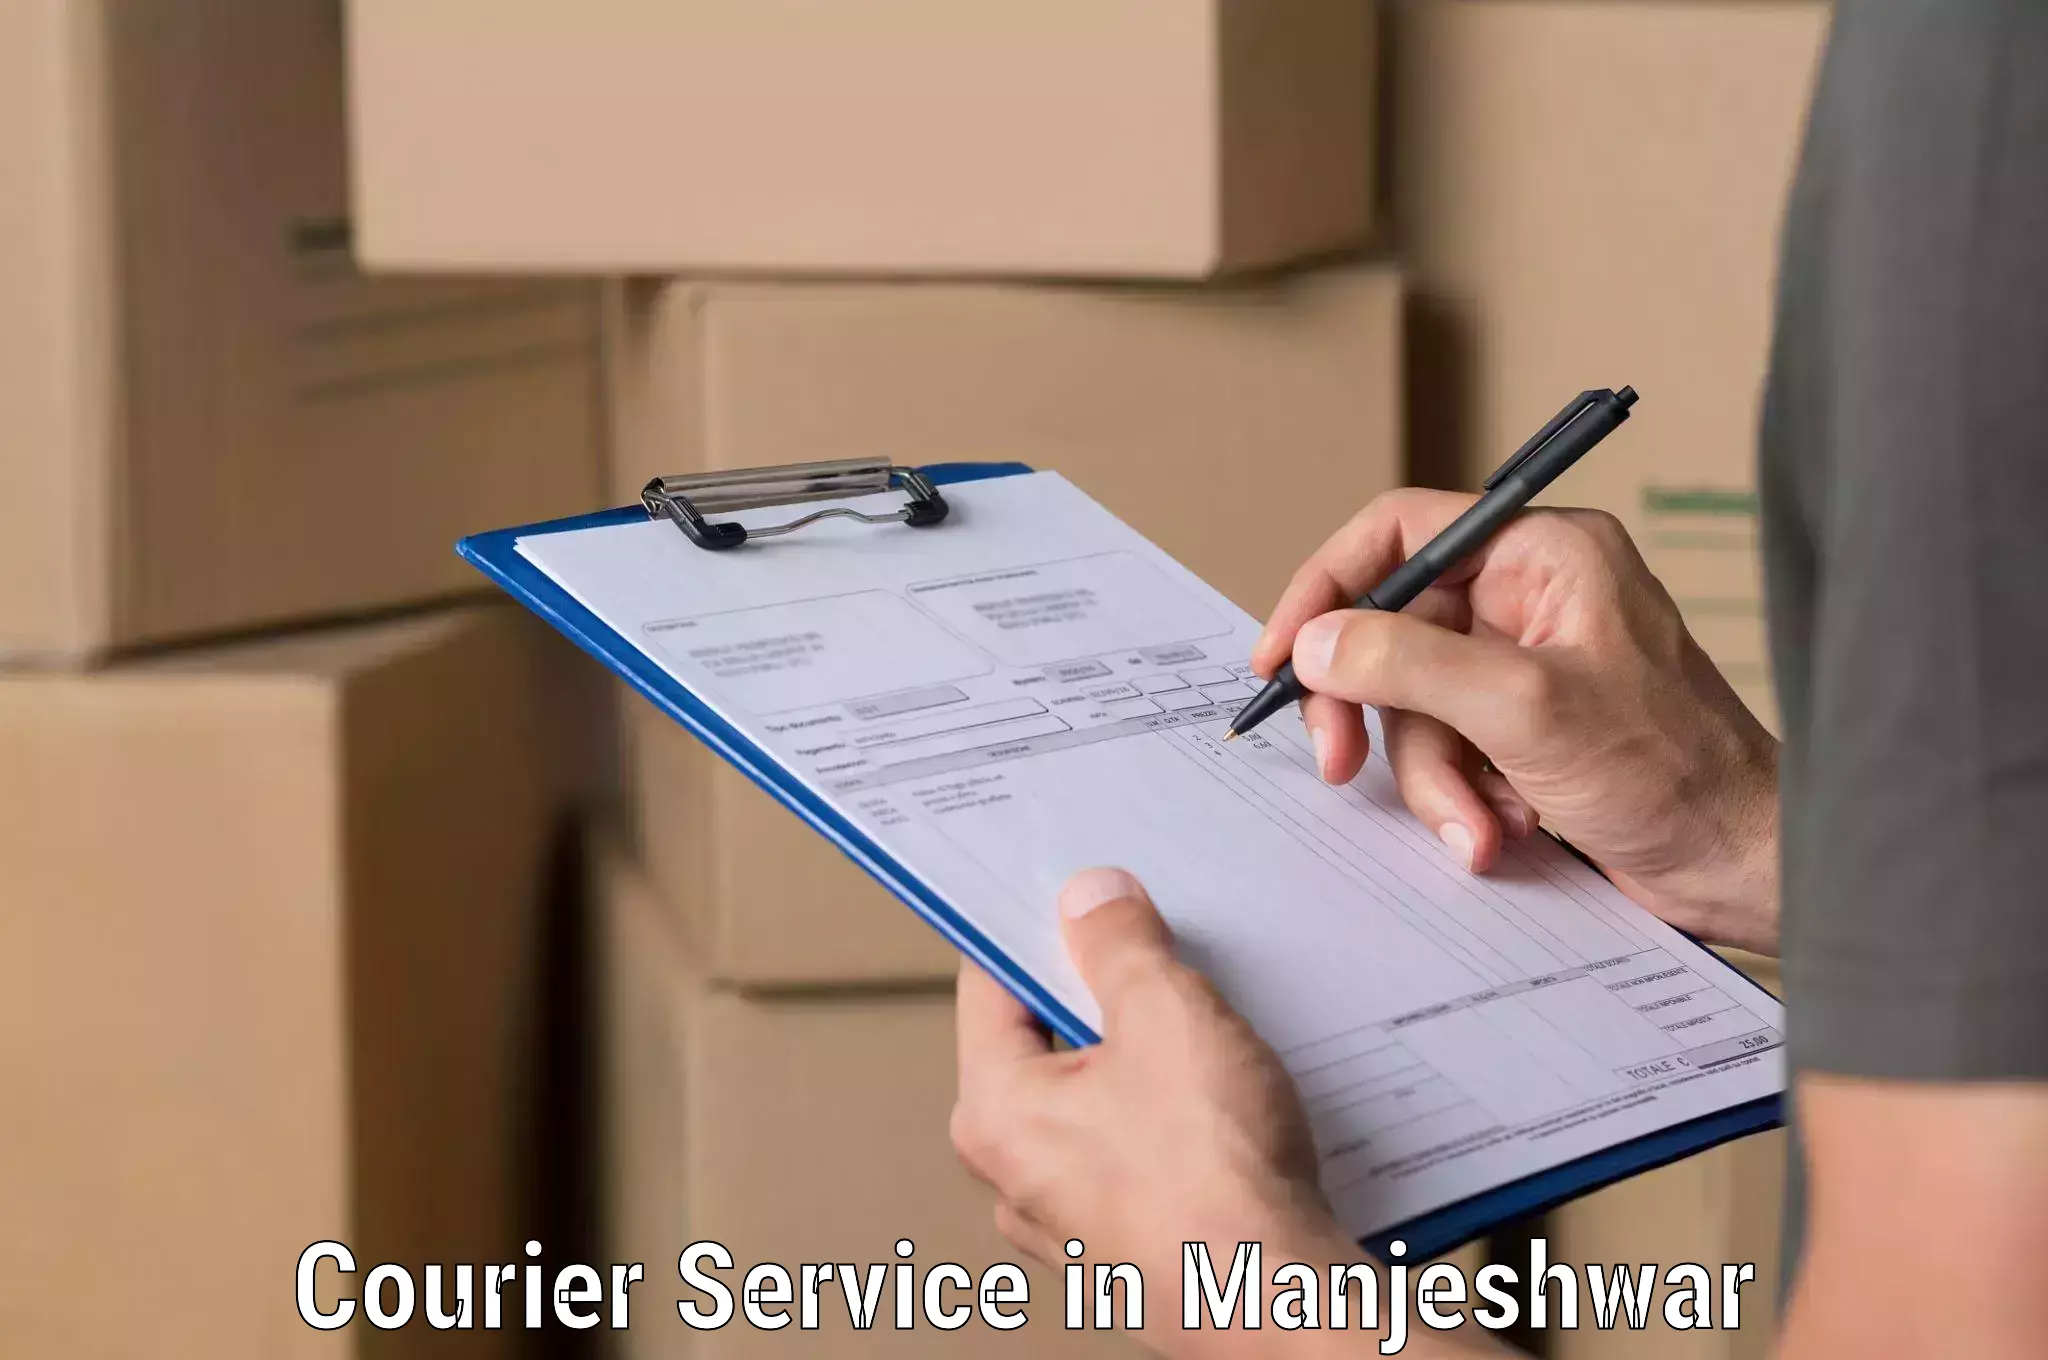 Shipping and handling in Manjeshwar